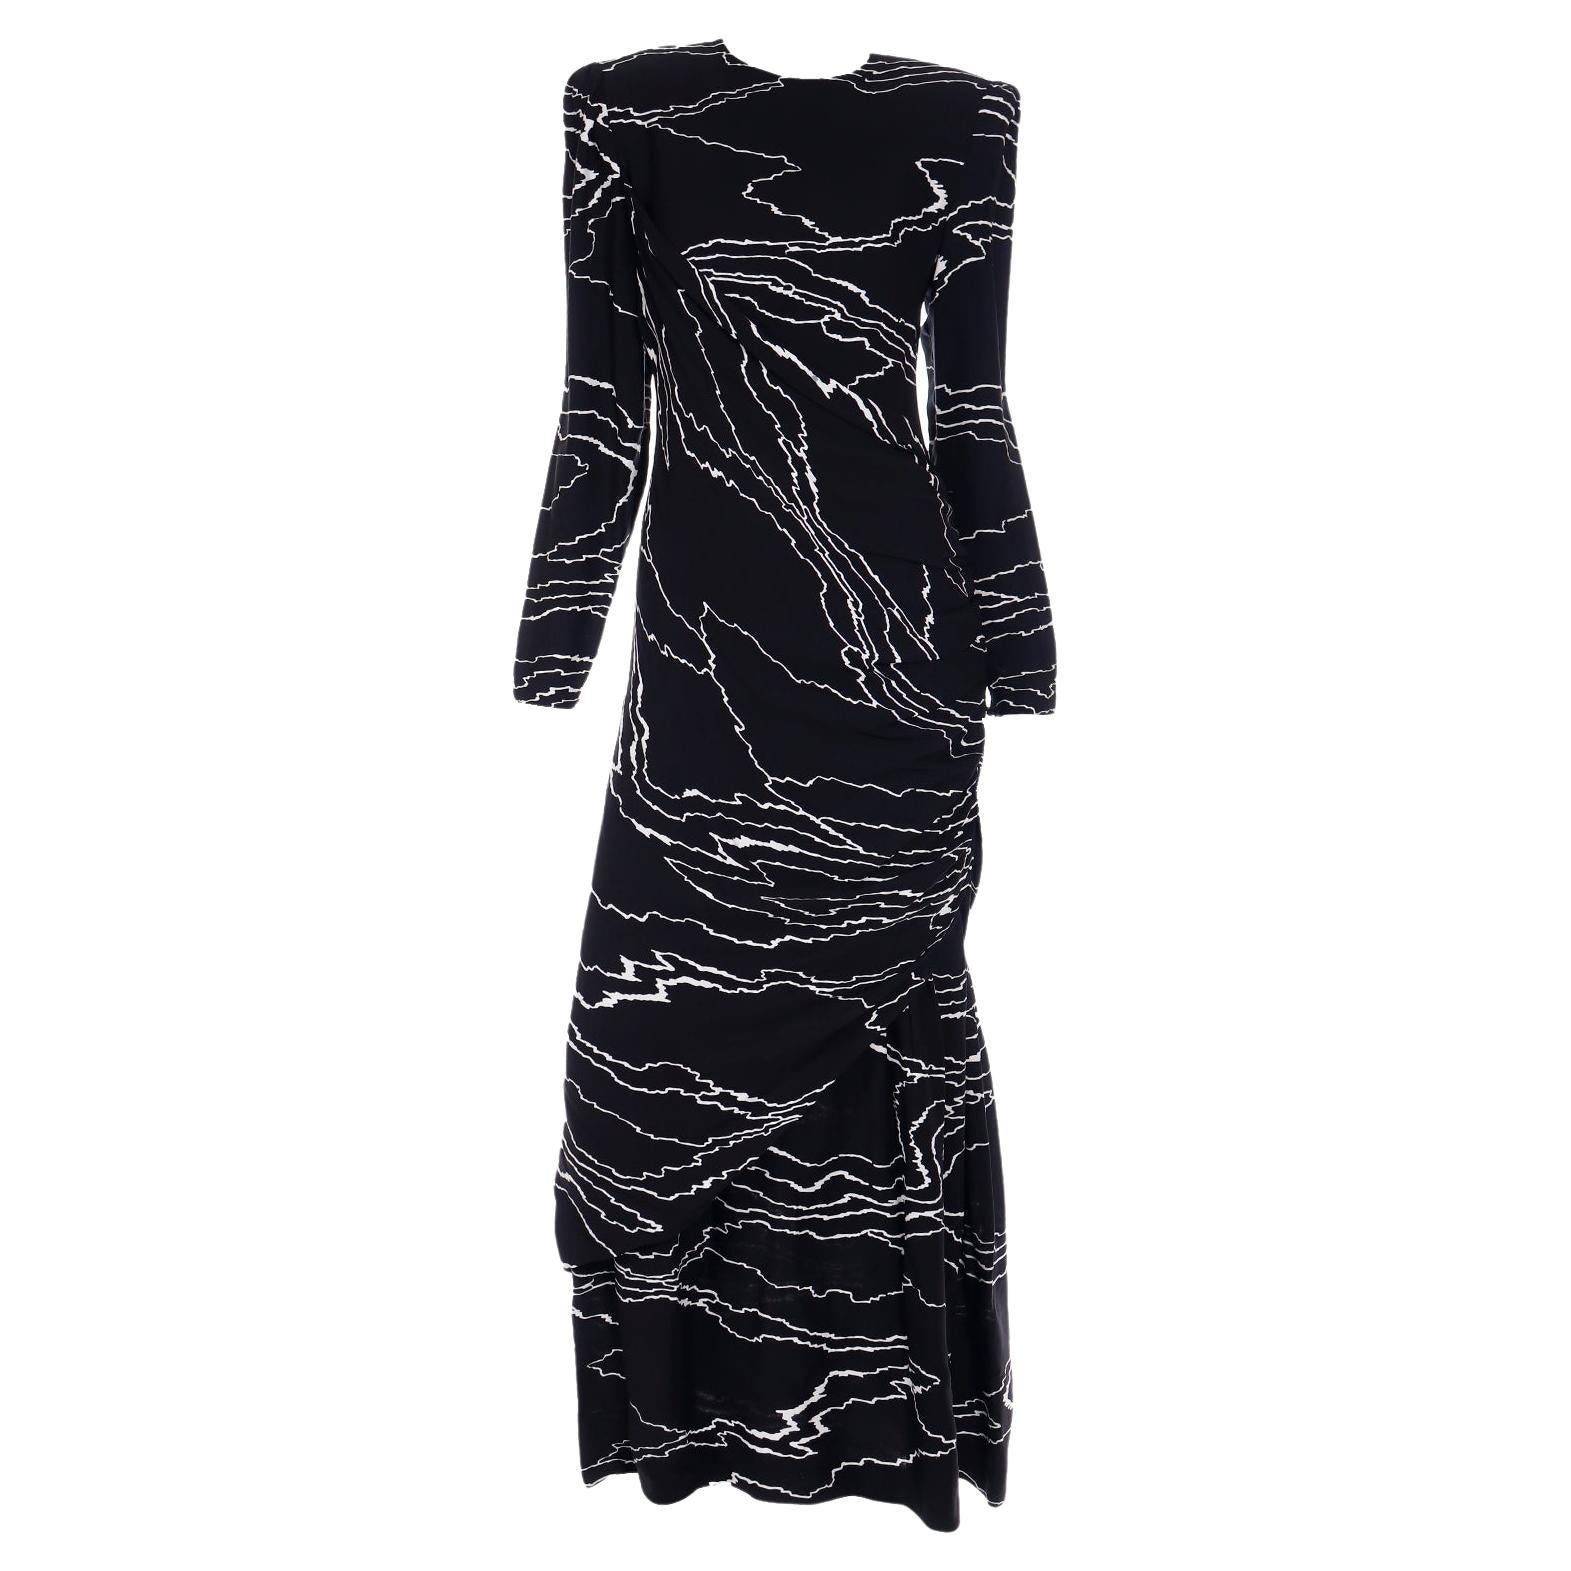 Robe de soirée vintage drapée noire et blanche abstraite Bill Blass, 1985